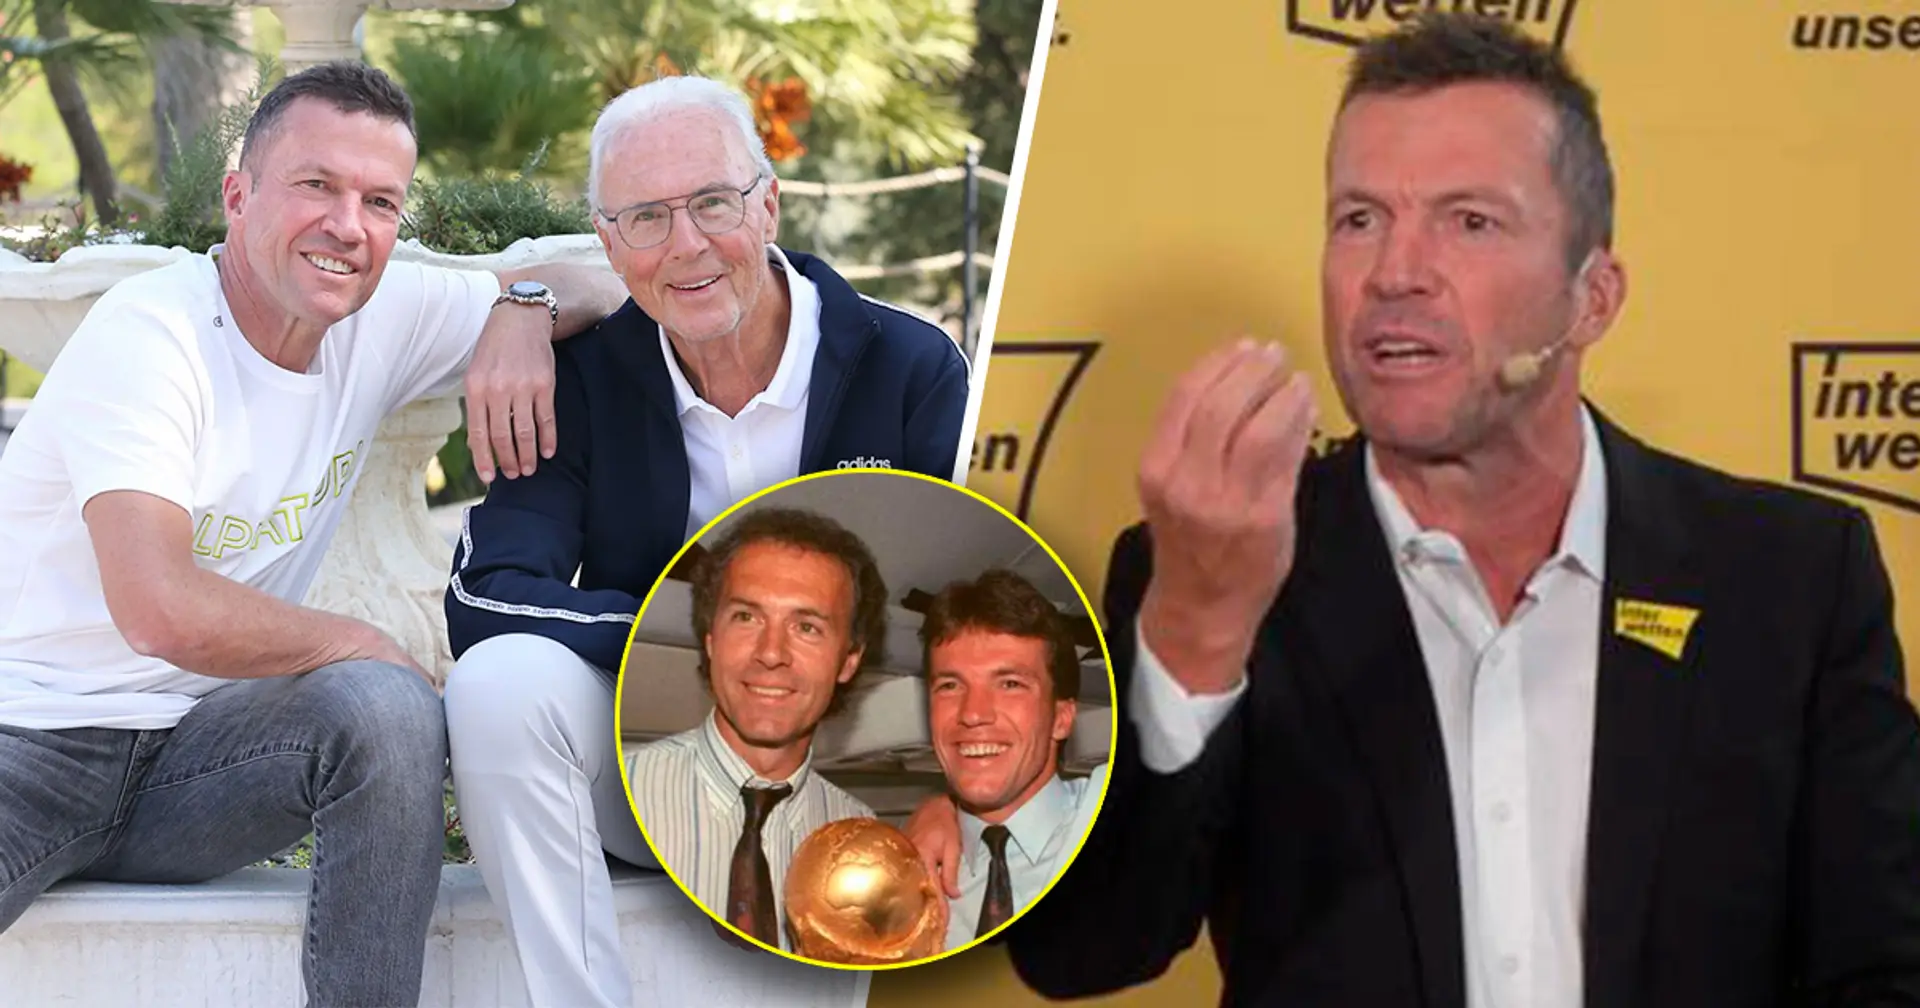 Matthäus über Beckenbauer: "Es ist für mich das Größte, ihn heute als Freund bezeichnen zu dürfen"